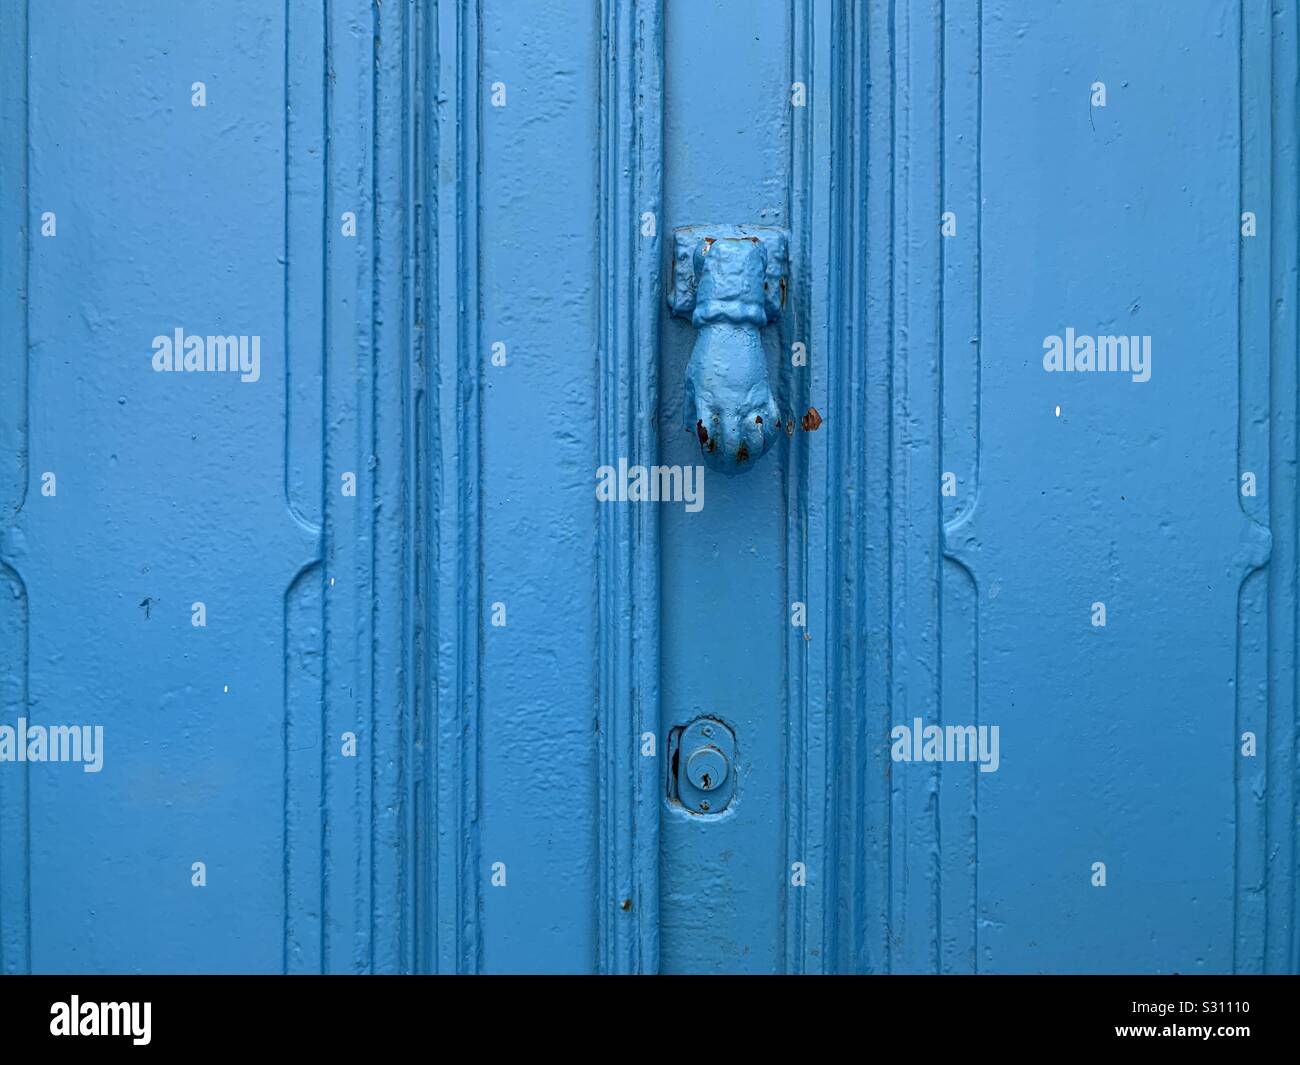 Wooden door. Assilah, Morocco Stock Photo